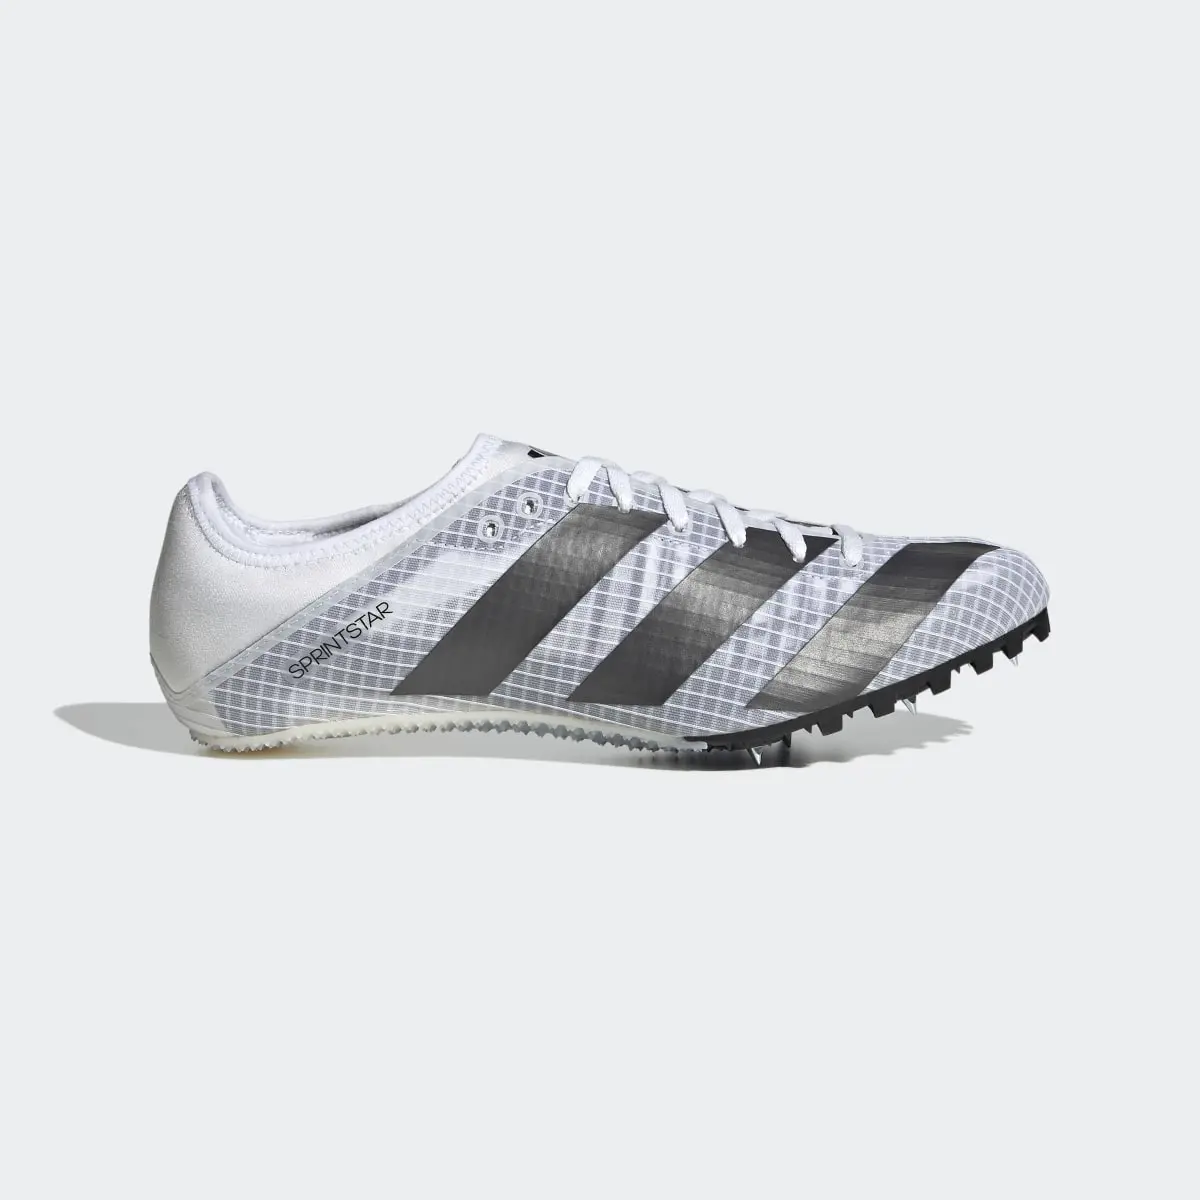 Adidas Sprintstar Spike-Schuh. 2